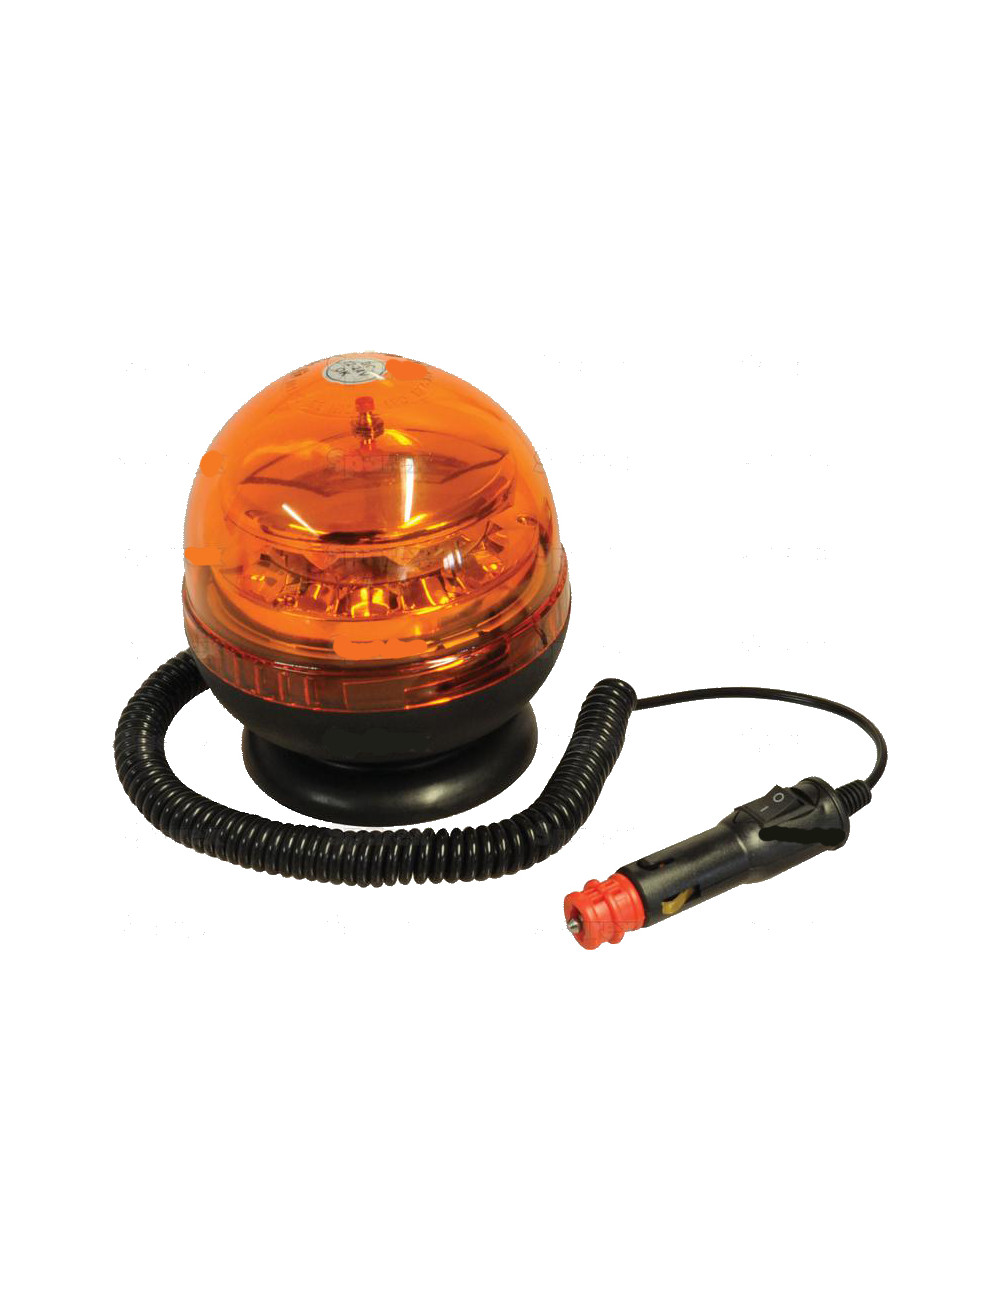 Lampeggiante LED Sparex - singolo flash, Doppio Flash, Rotante, Magnetico, 12/24V- cod 114414